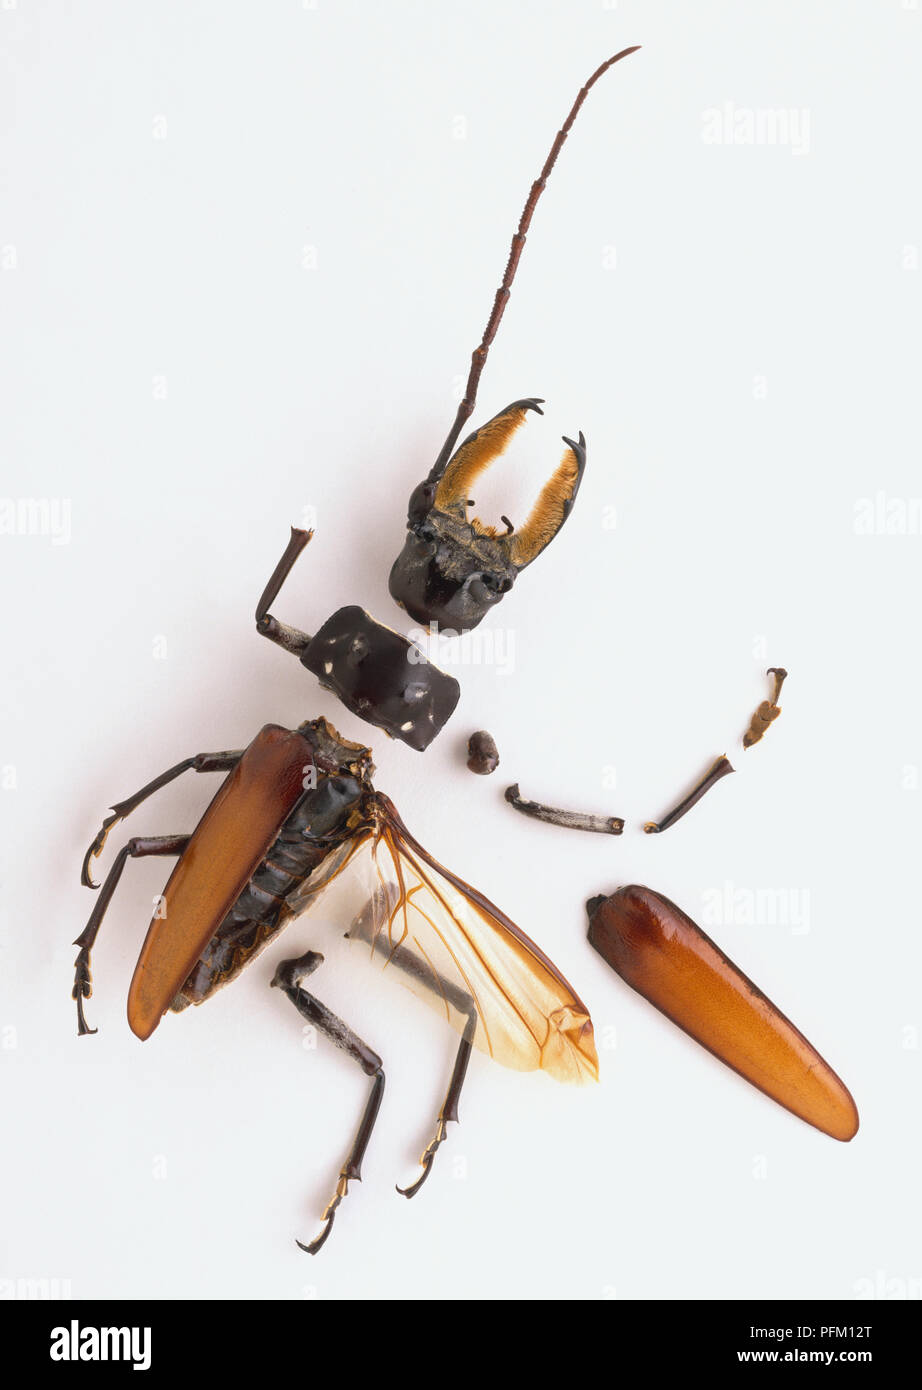 Segmentiertes exoskelett eines Käfers in Teile einschließlich der Kopf mit großen Kiefer, Flügel und Panzer und Beine voneinander getrennt. Stockfoto